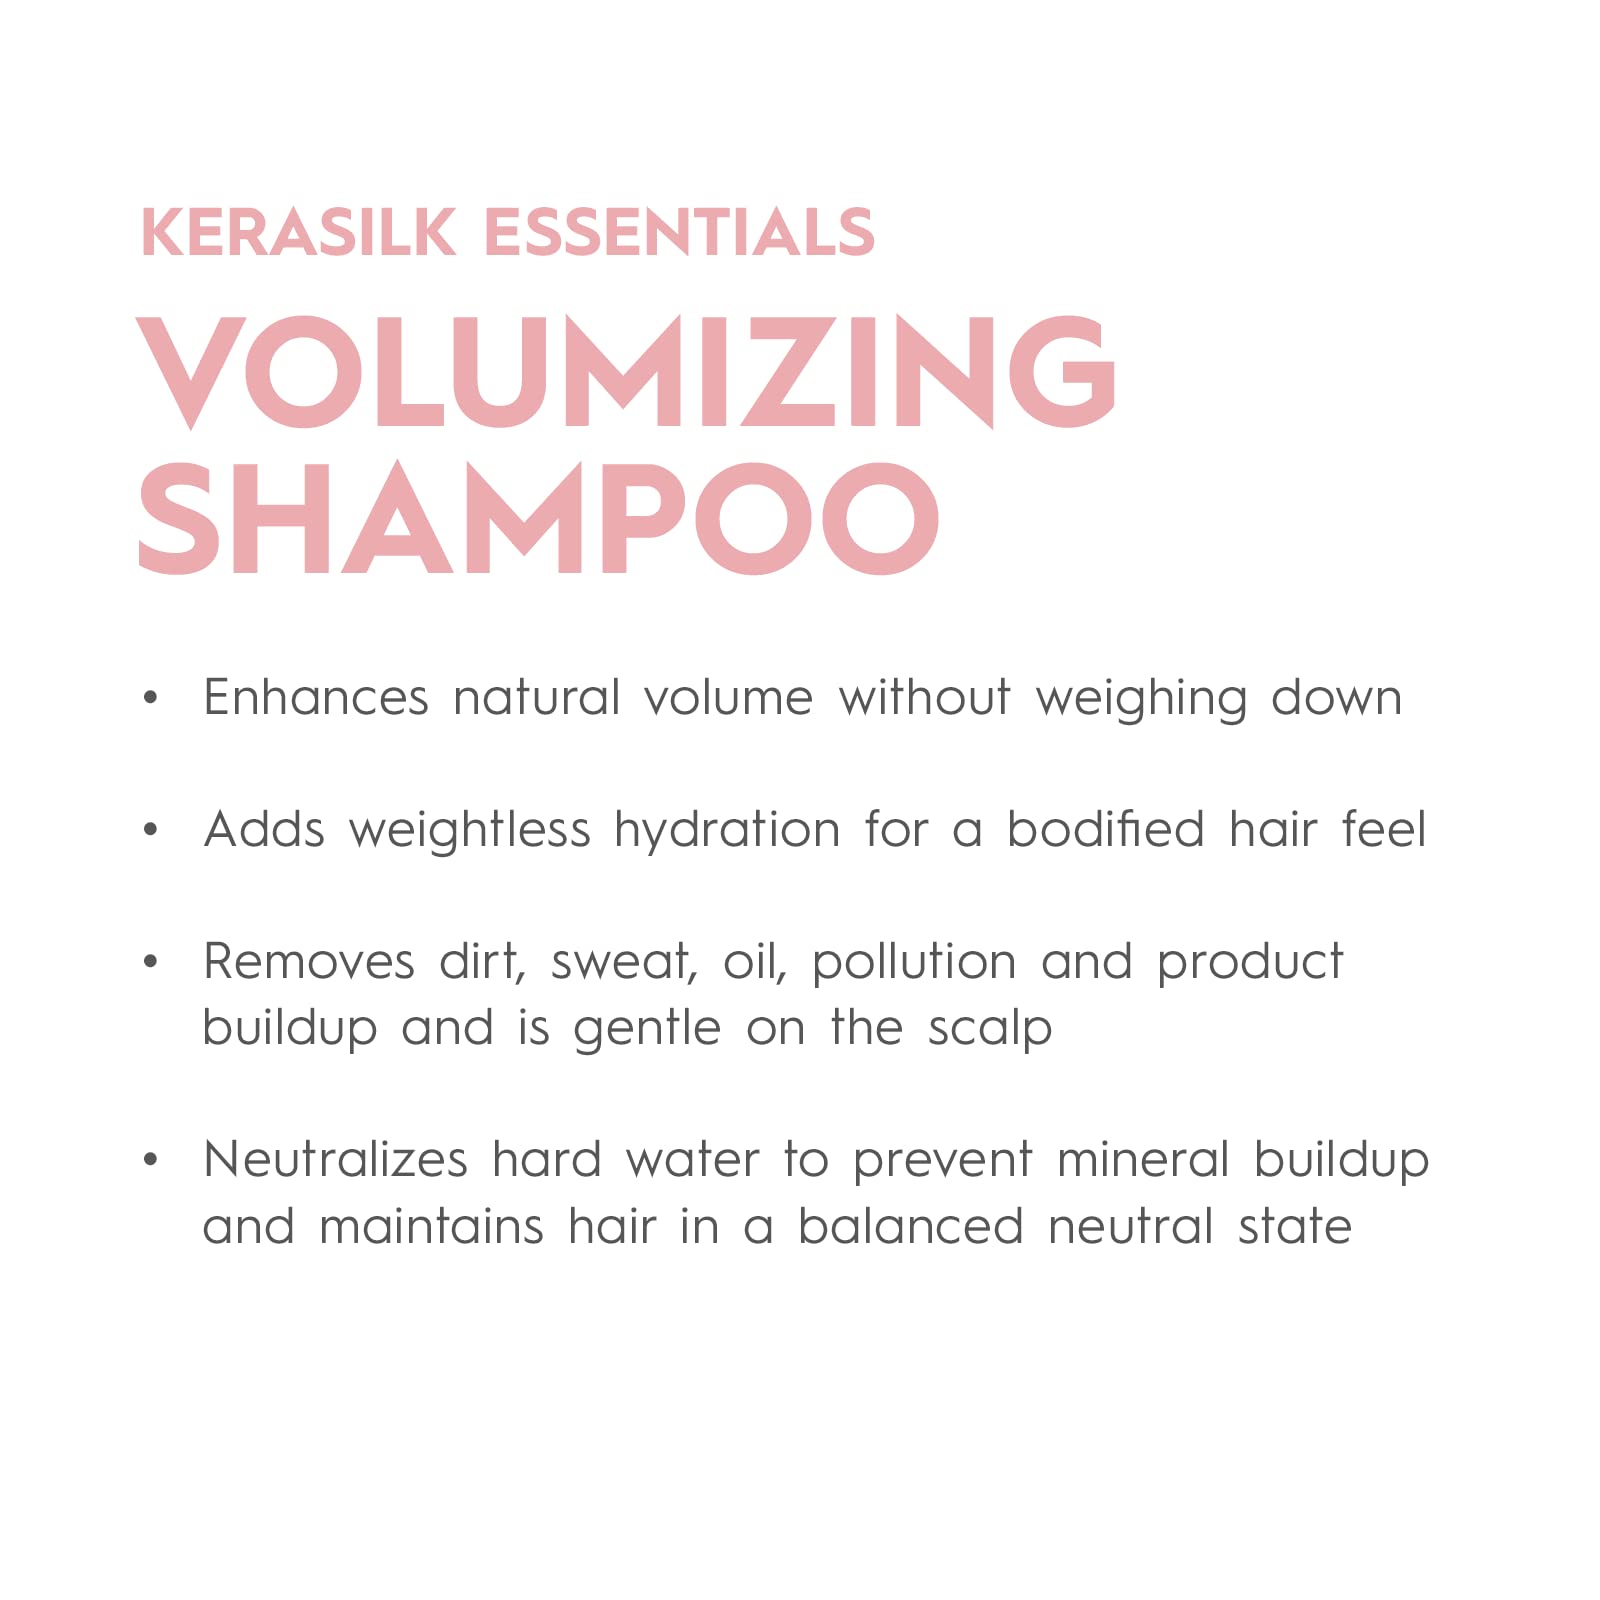 KERASILK Volumizing Shampoo